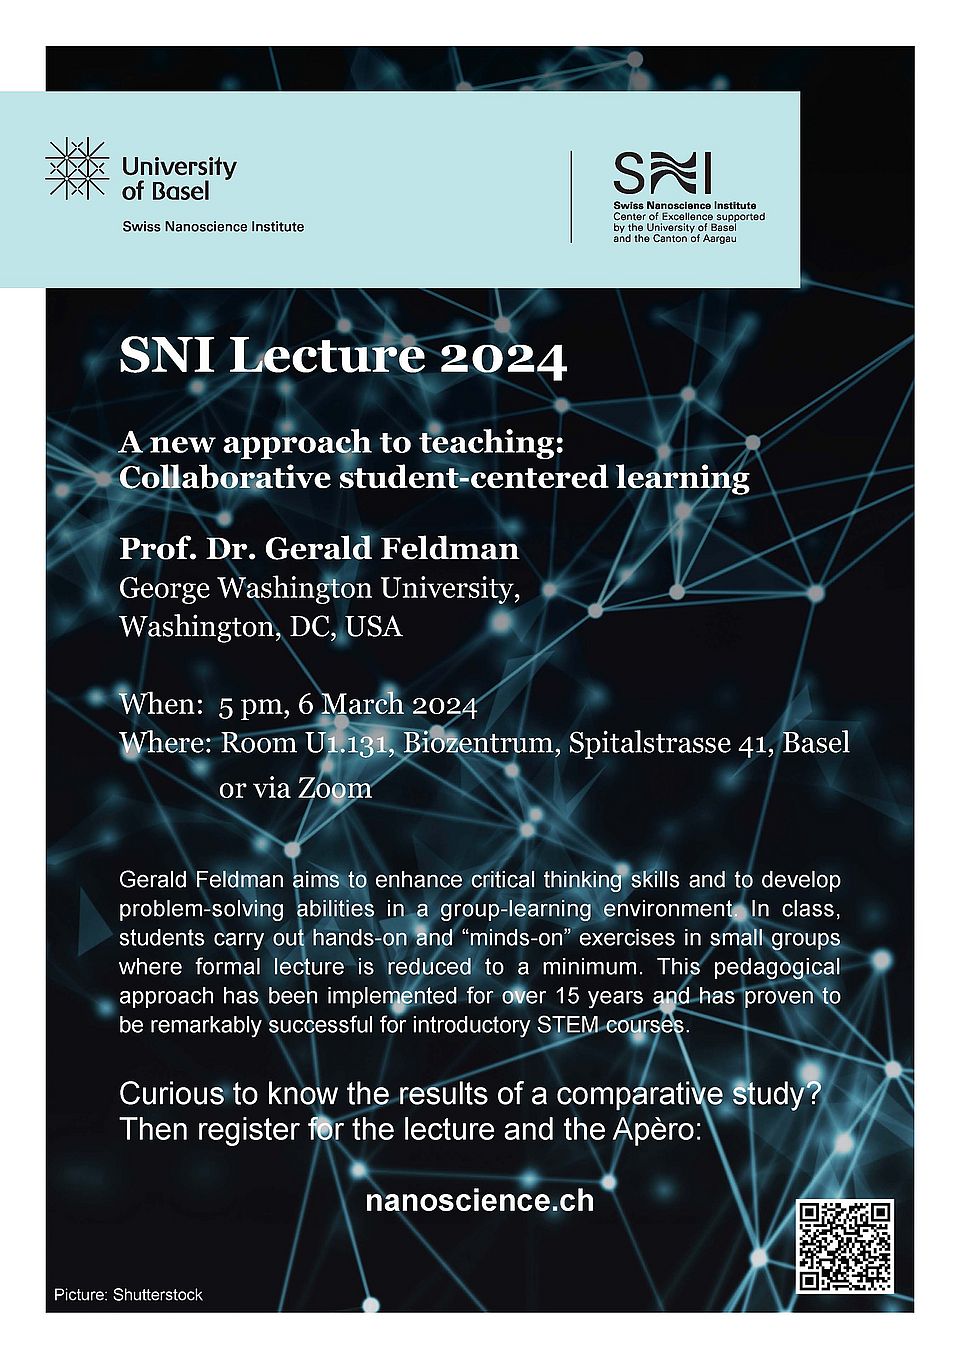 SNI Lecture 2024 description